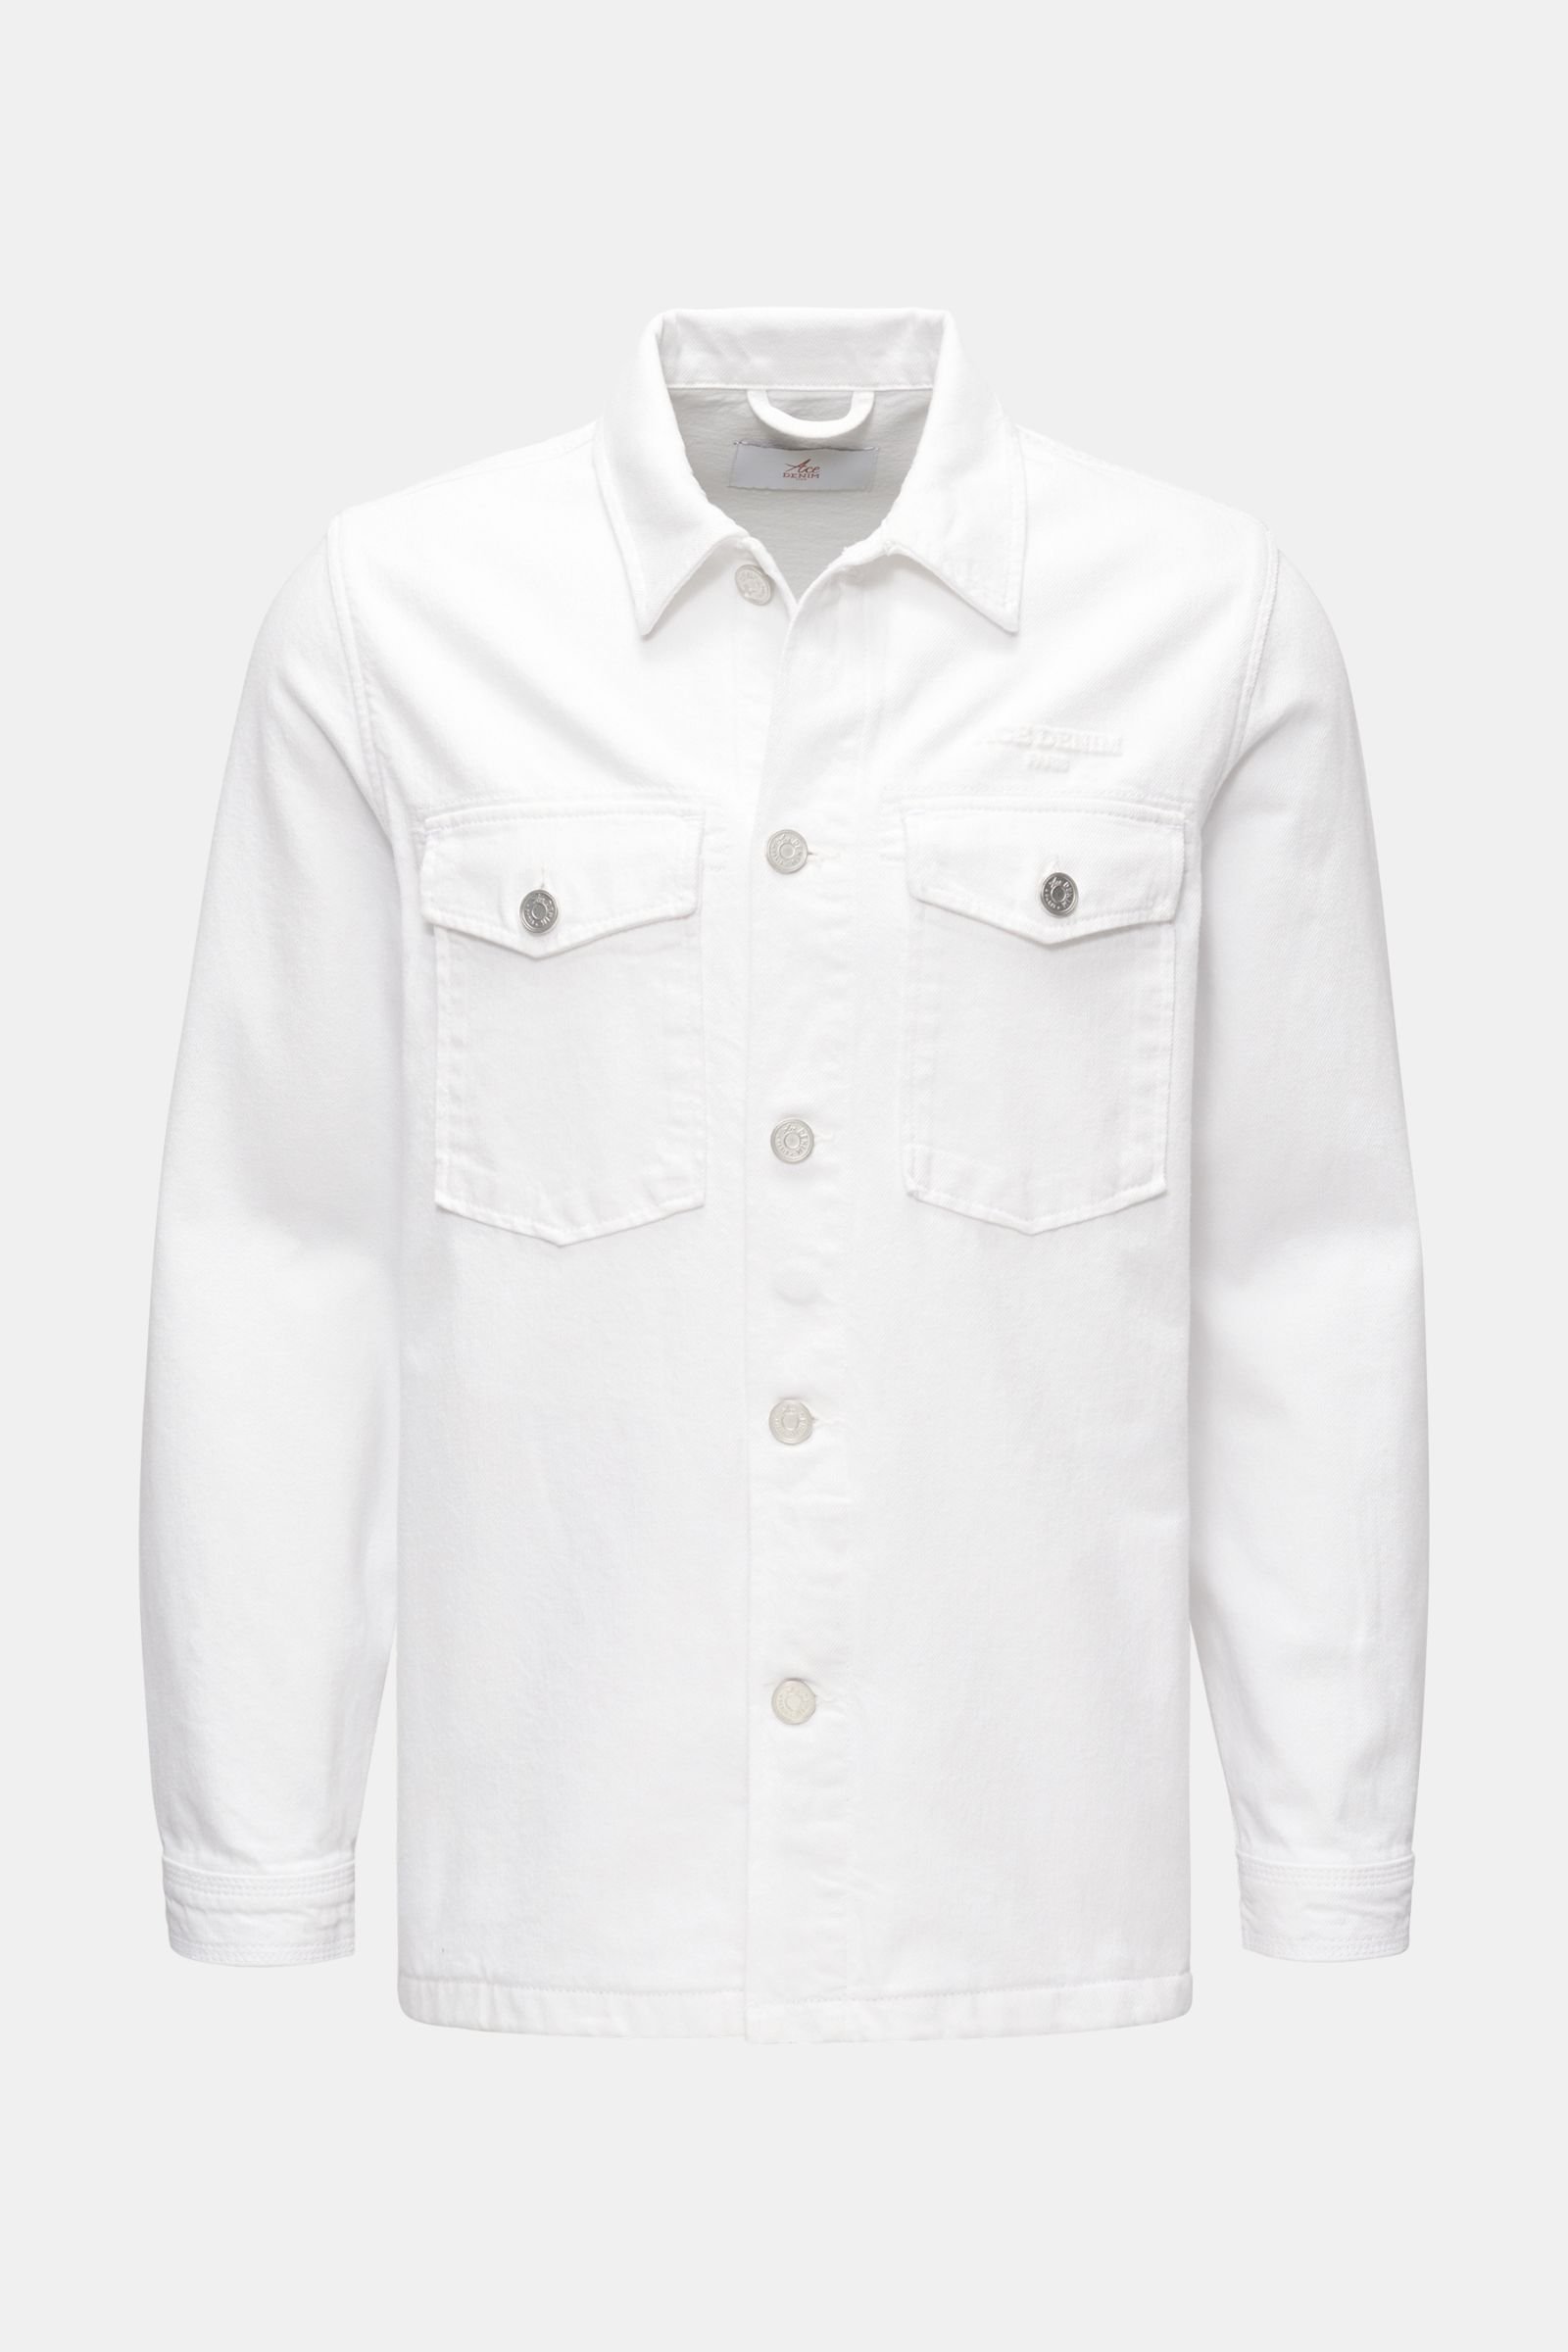 Denim jacket white